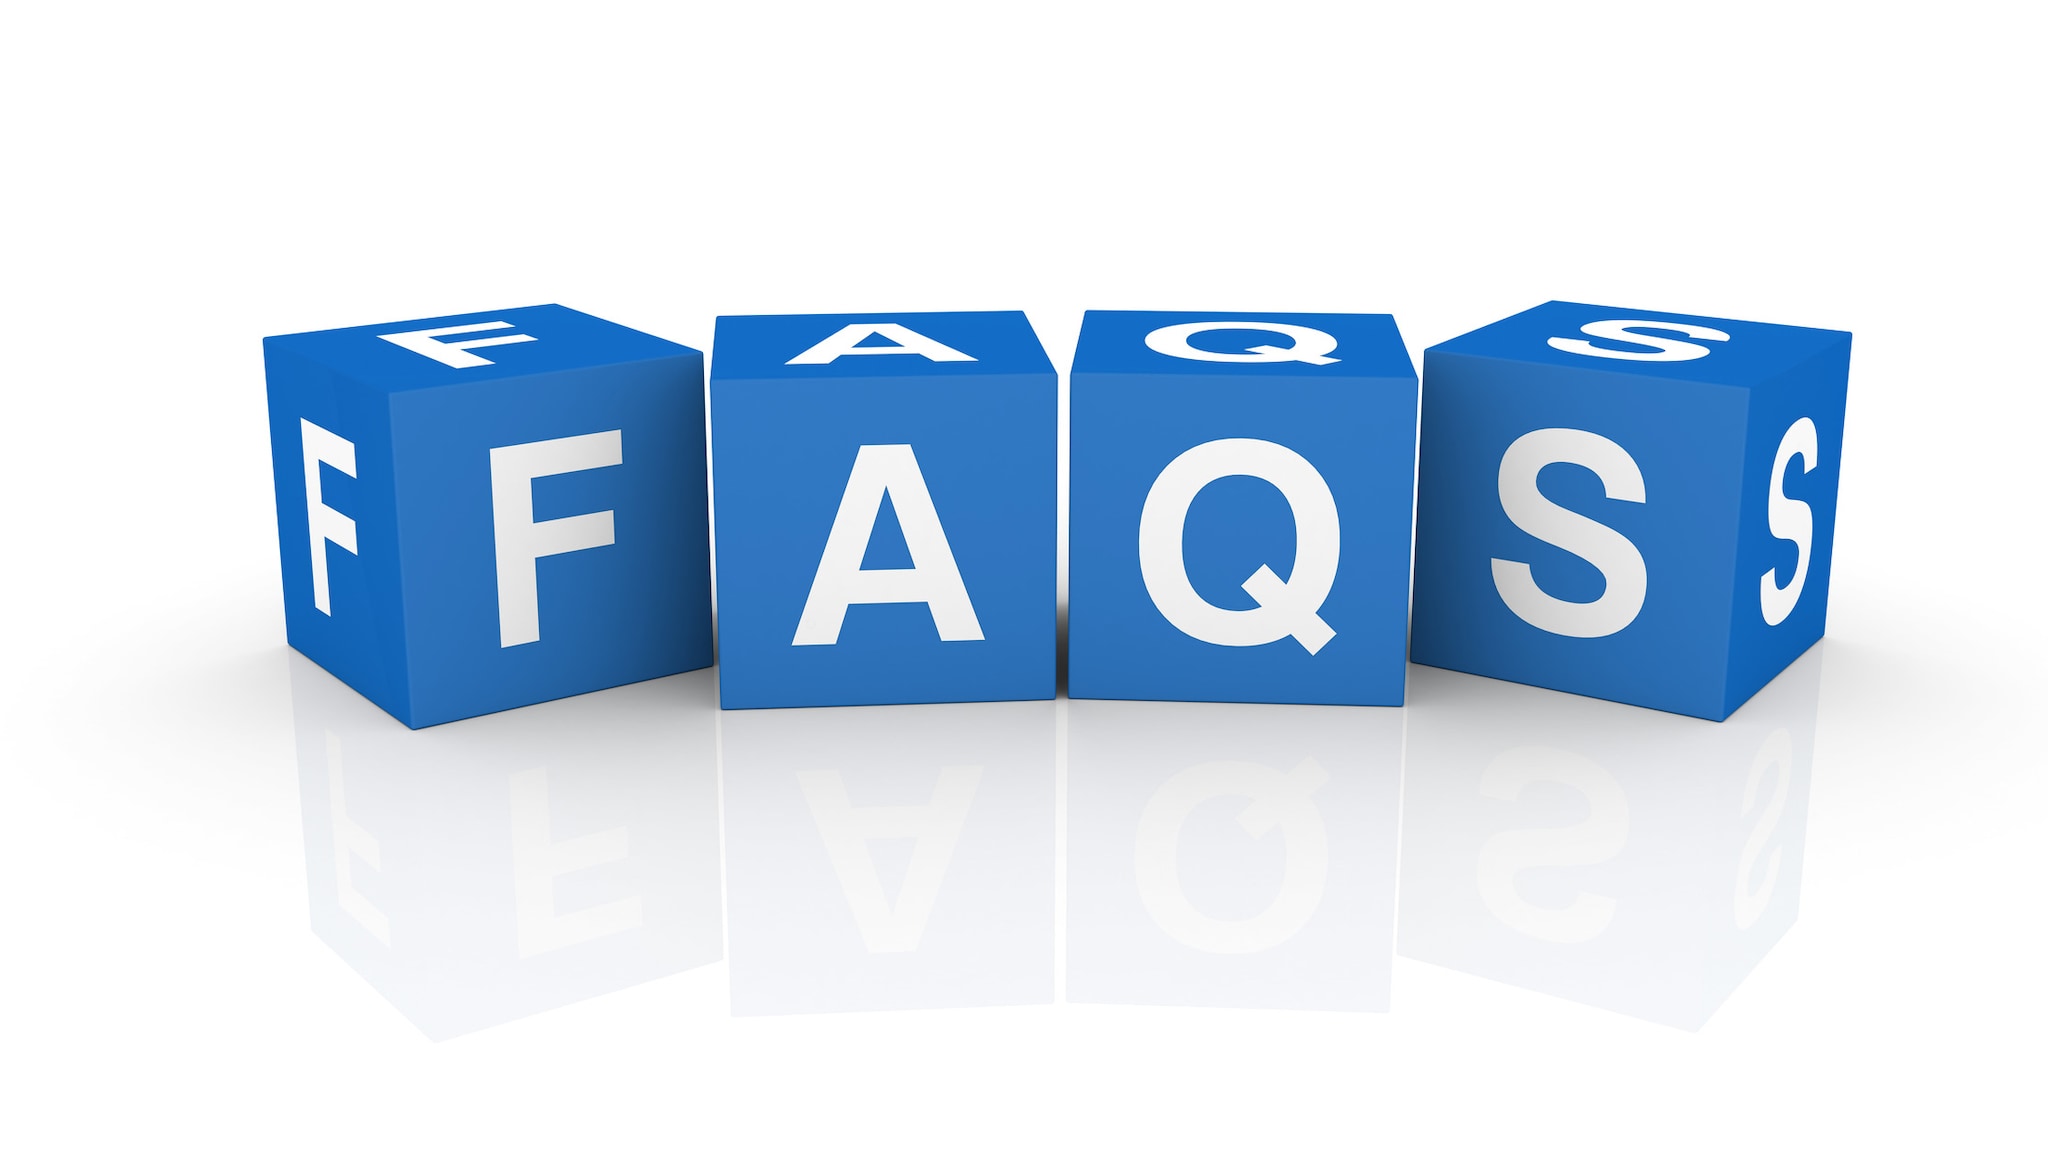 FAQ letters on blue blocks